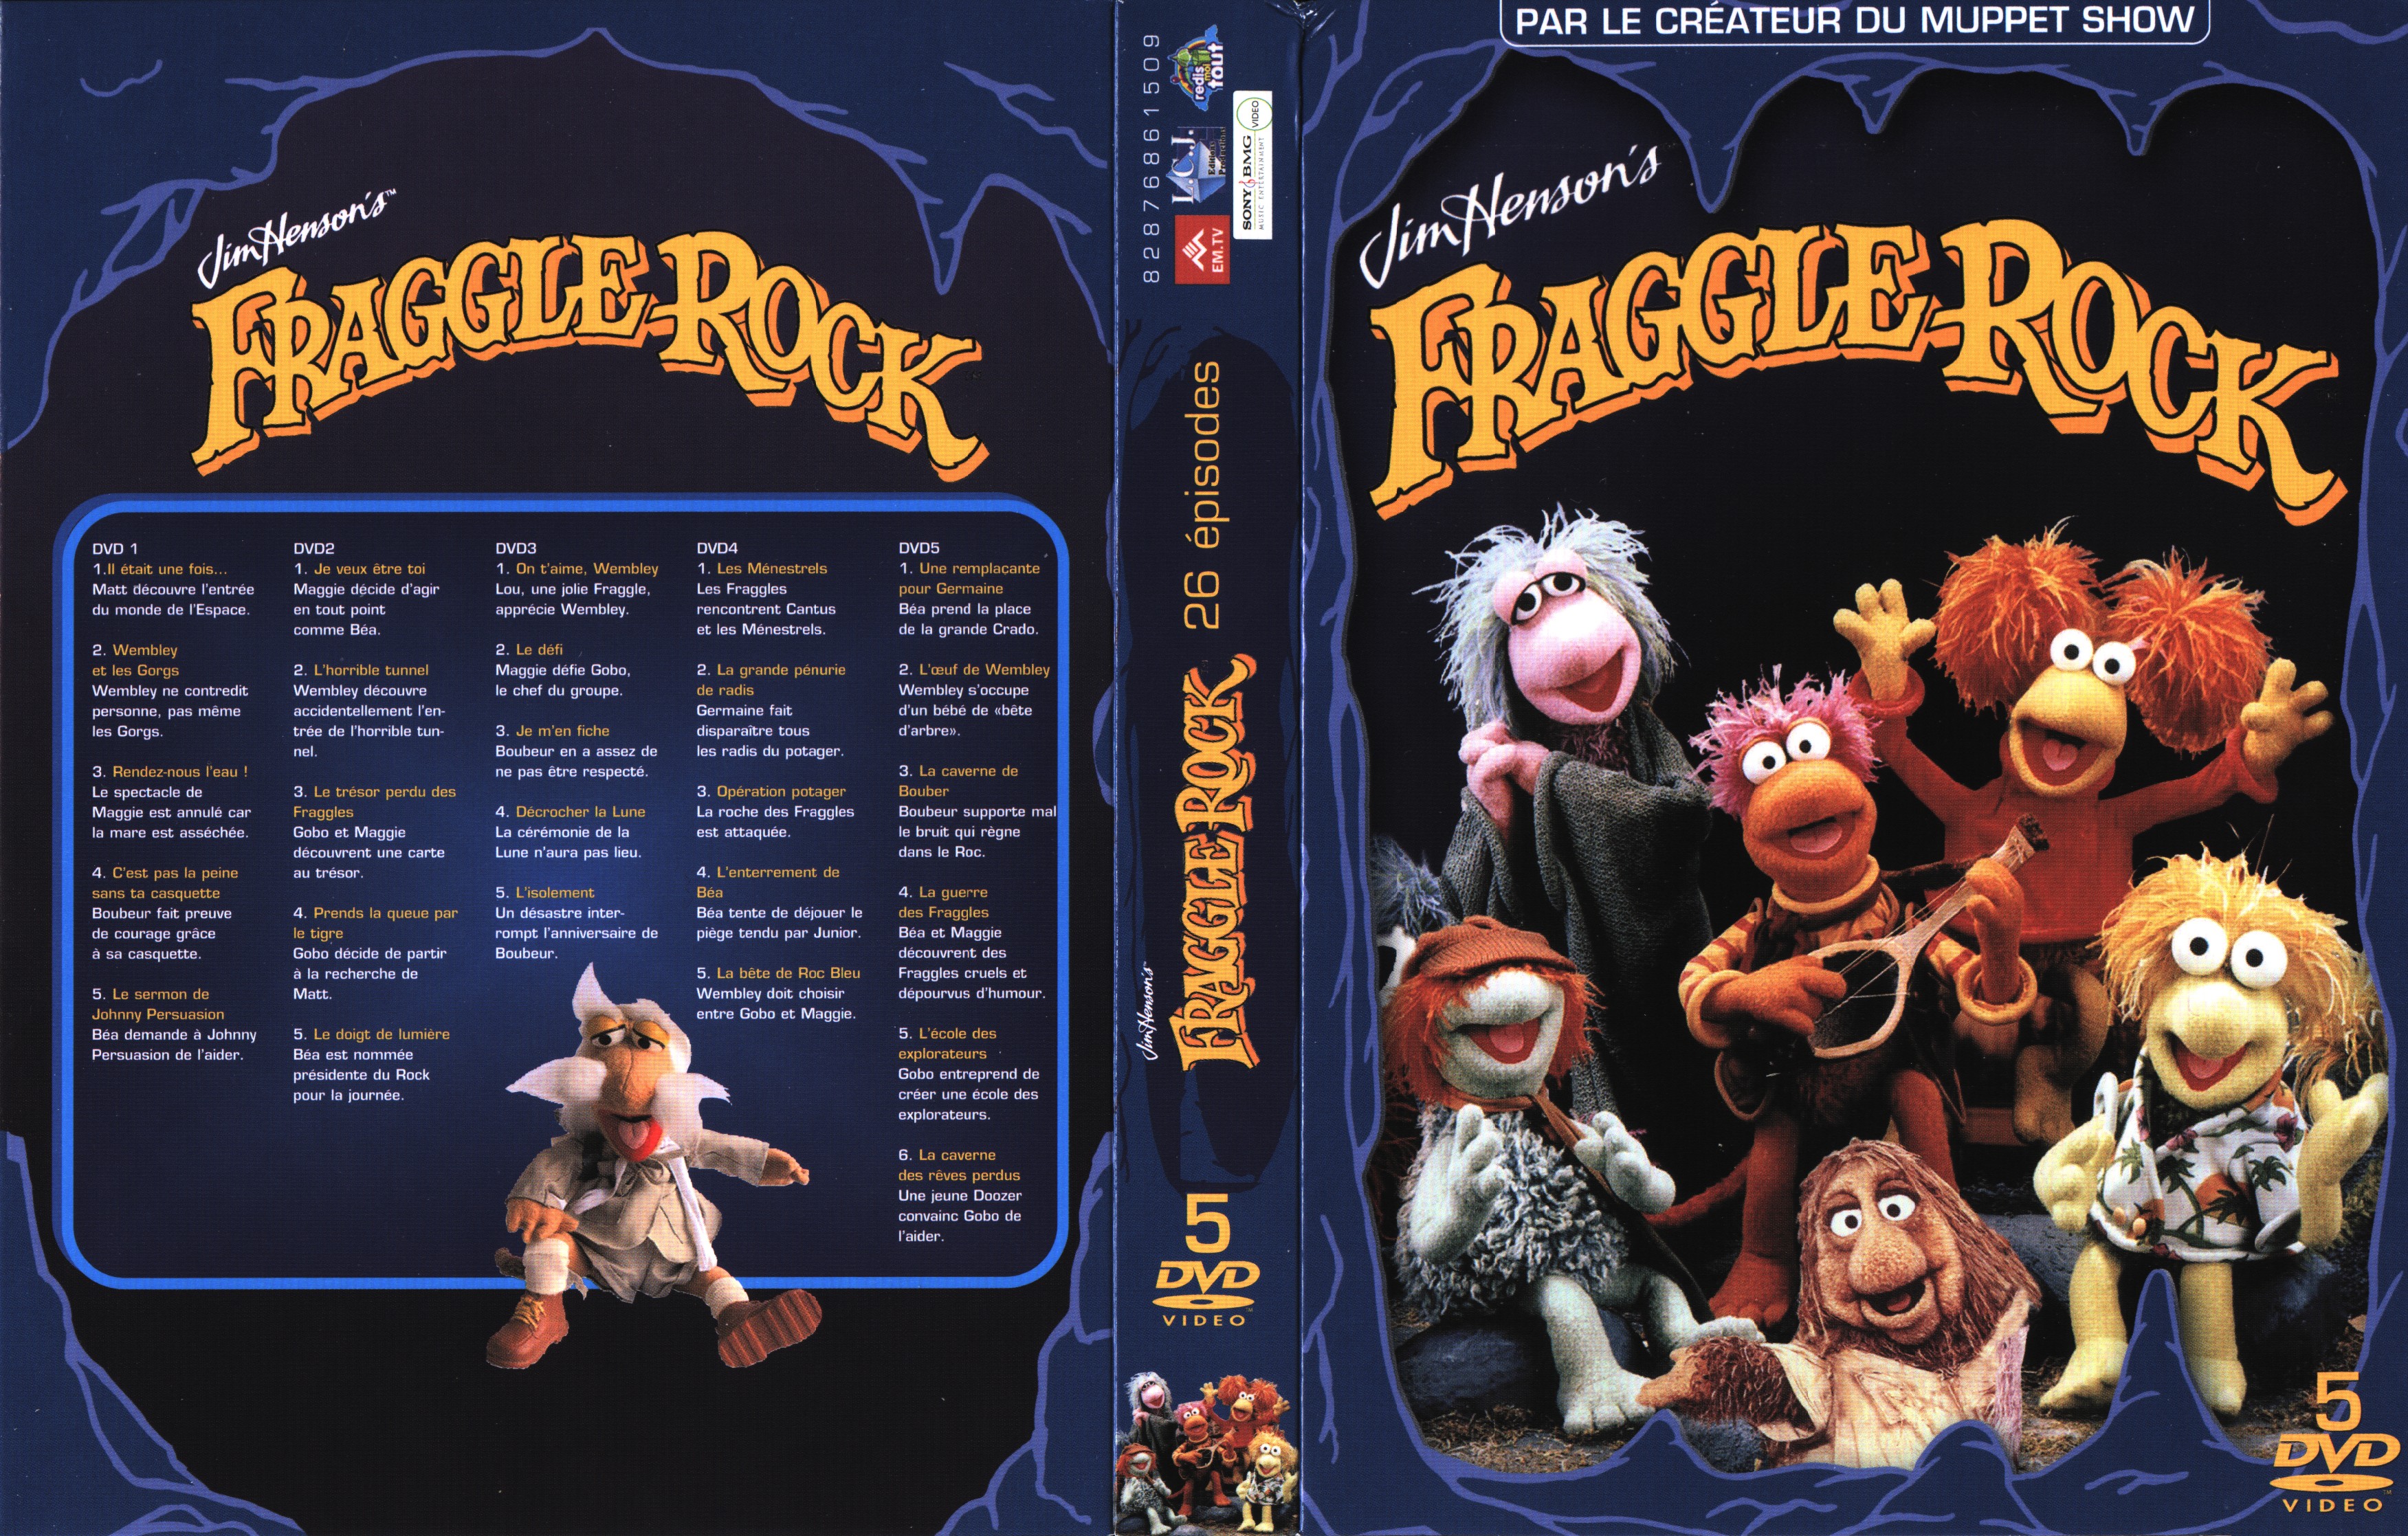 Jaquette DVD Fraggle rock COFFRET